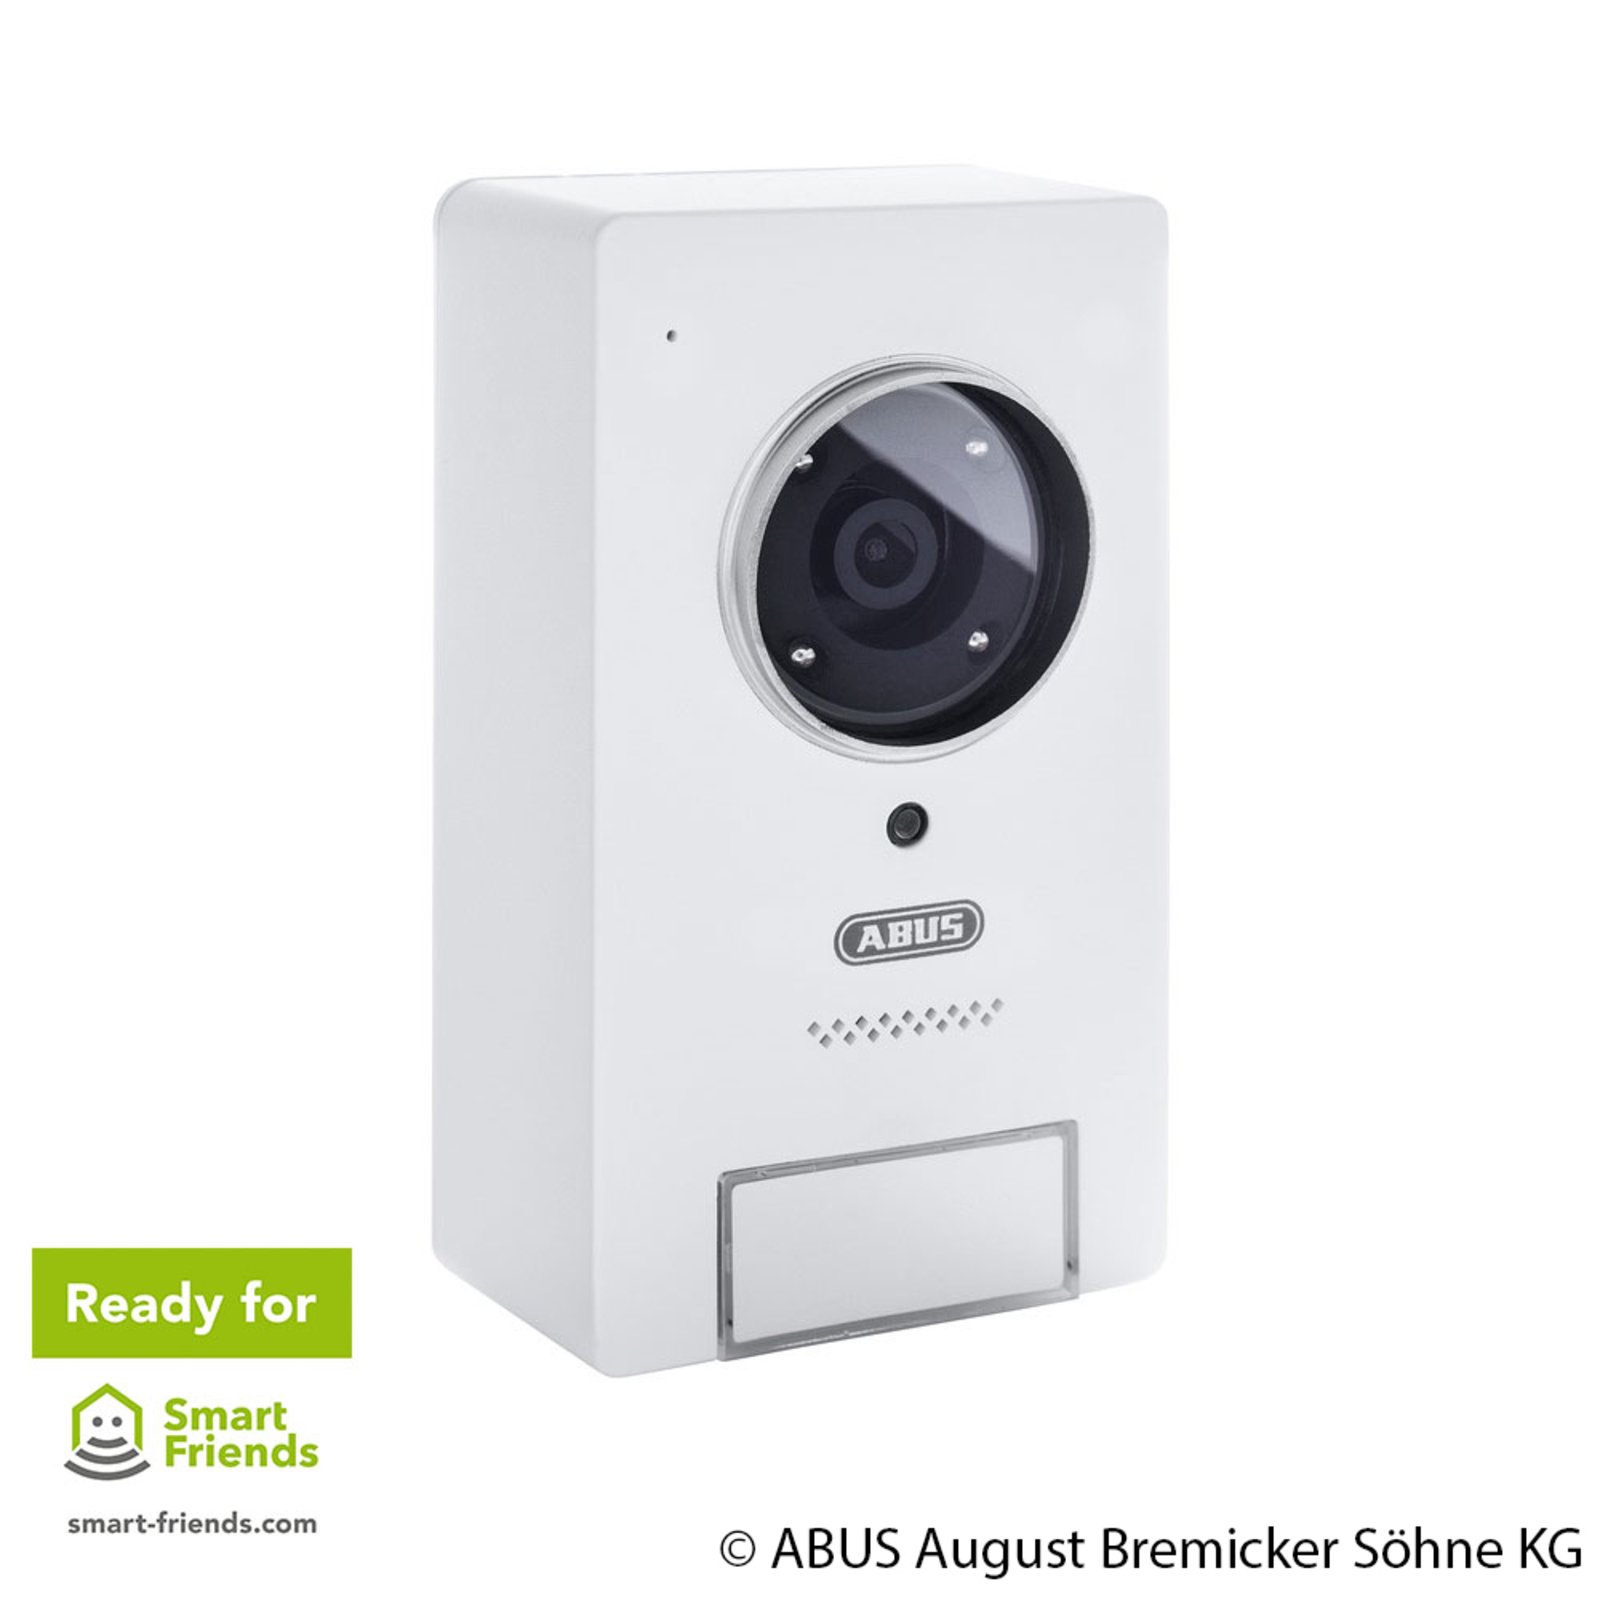 ABUS Smart Security WLAN video door intercom system